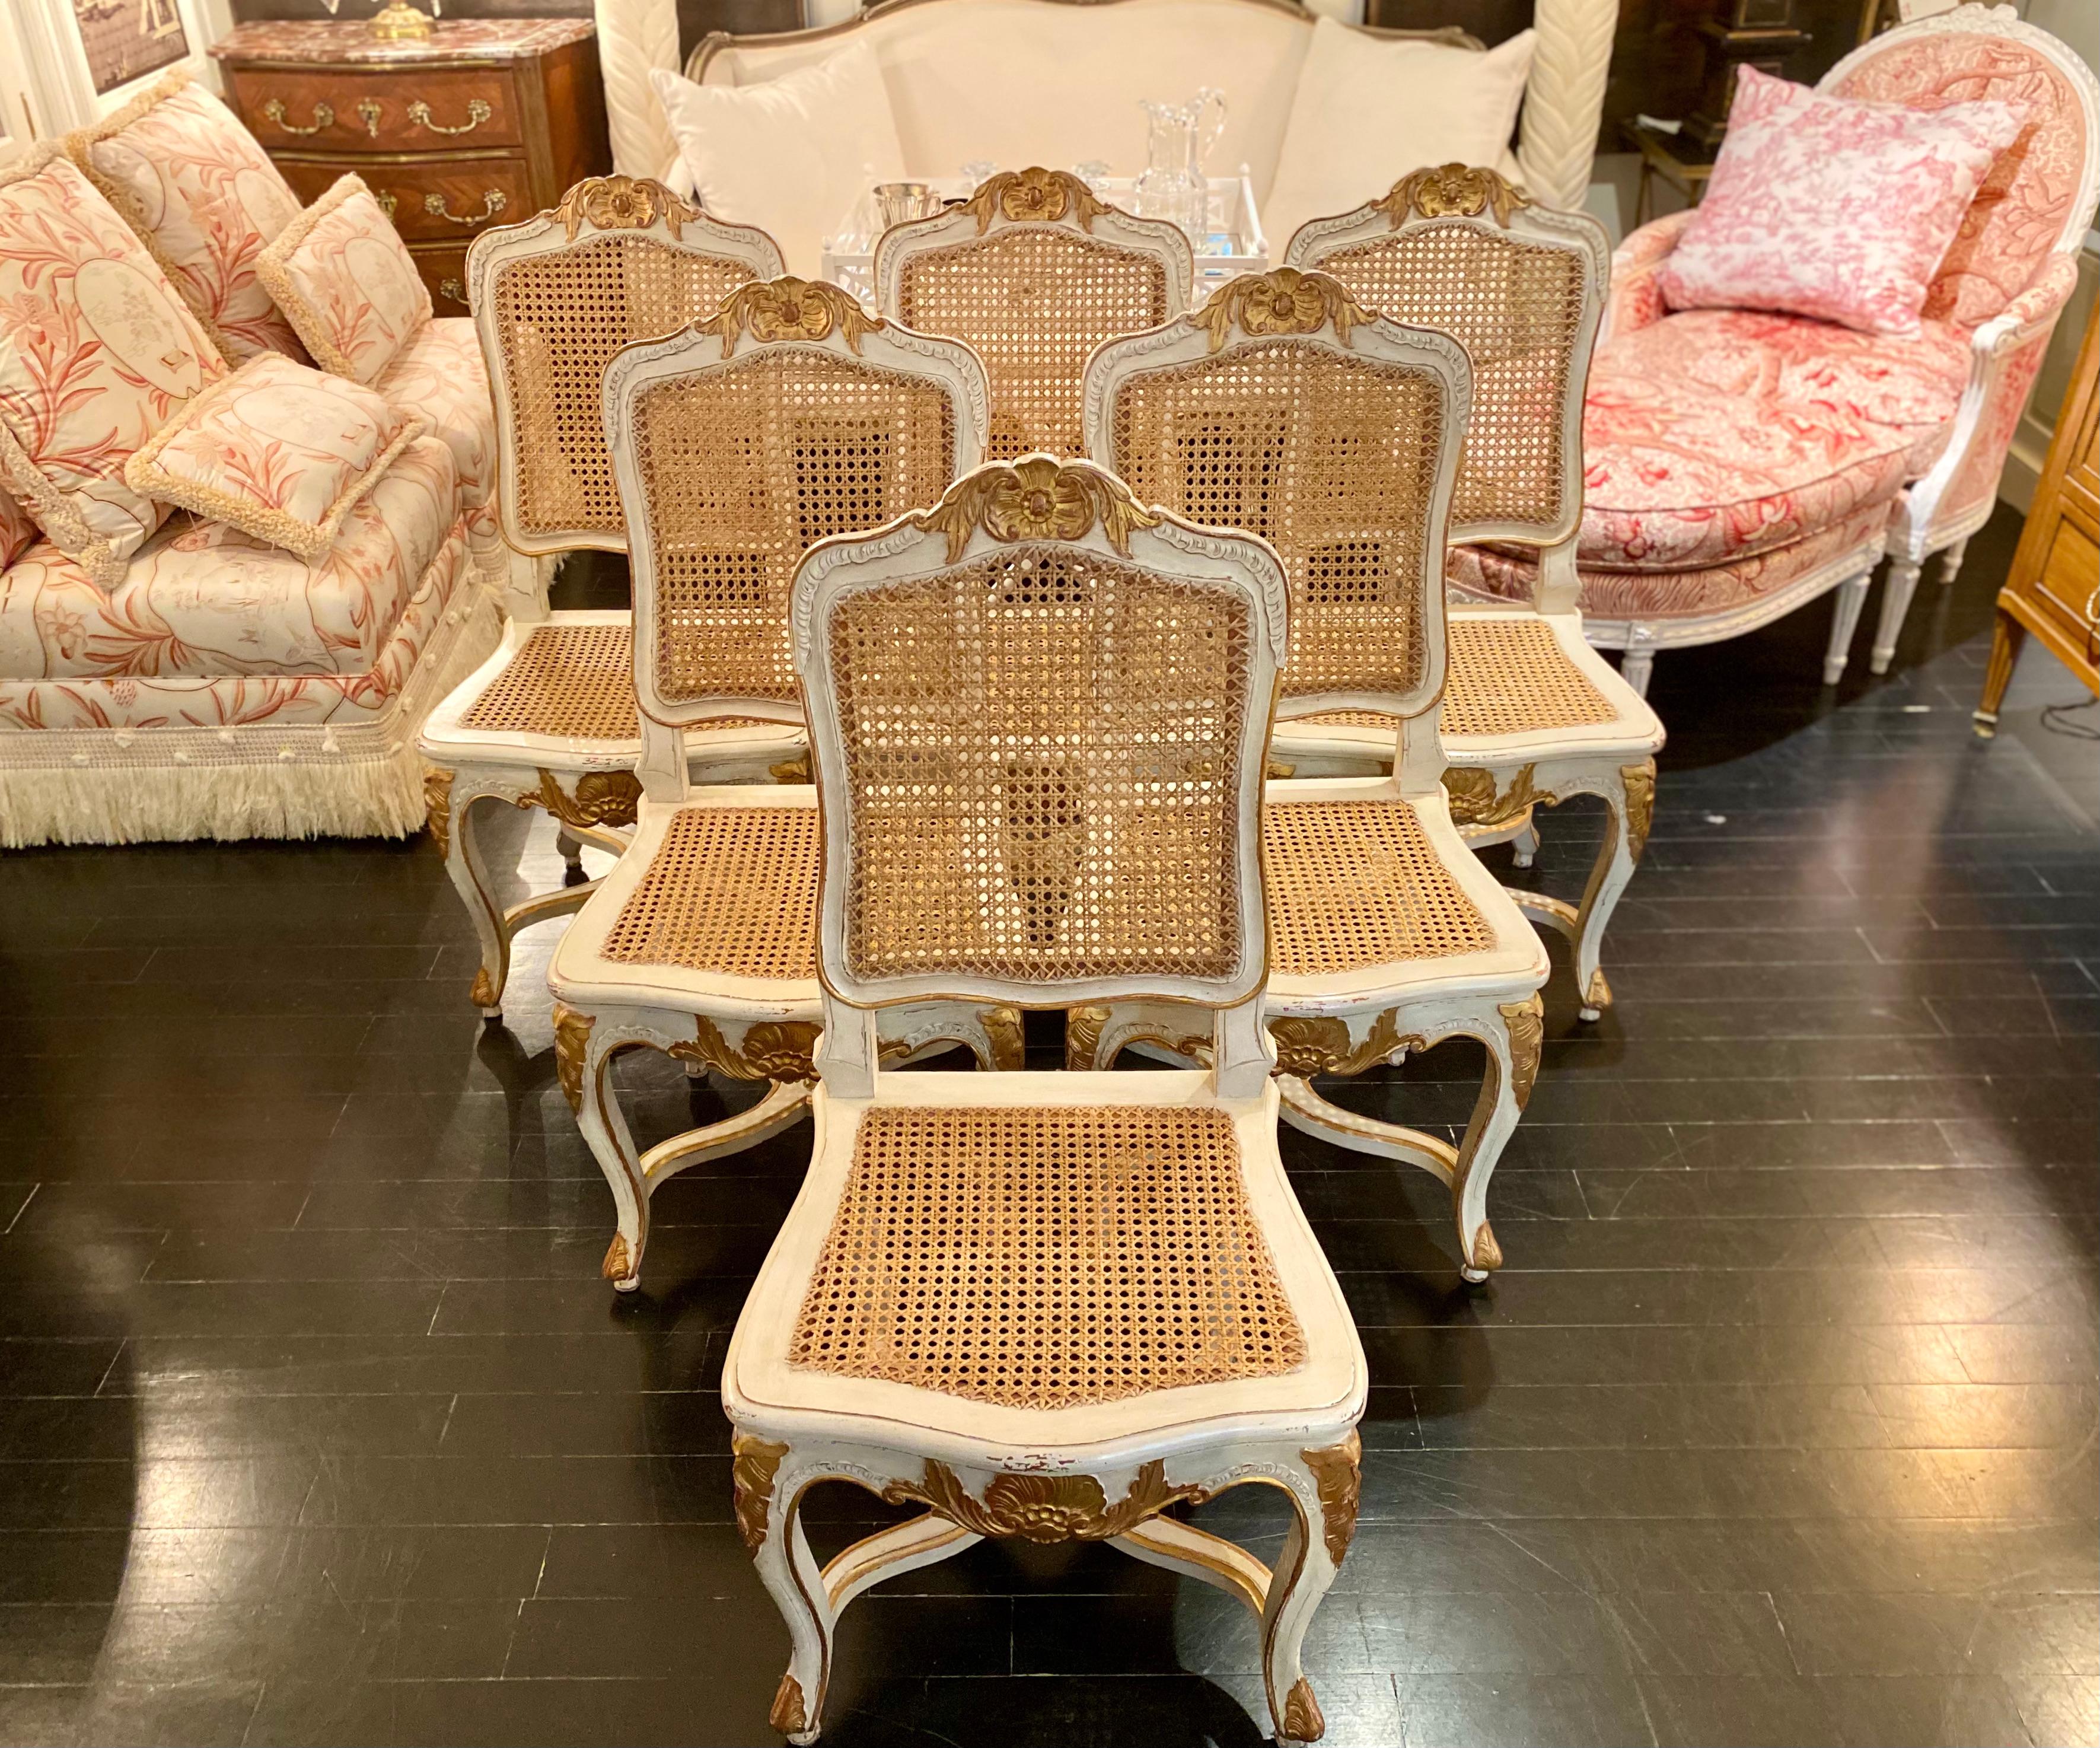 Ensemble de six chaises françaises Trianon patinées gris pâle, avec dossiers et sièges cannelés naturels, dans le style classique de Louis XV. Les pieds sculptés réunis par une entretoise, le dossier de la chaise et l'assise soulignés d'un cartouche